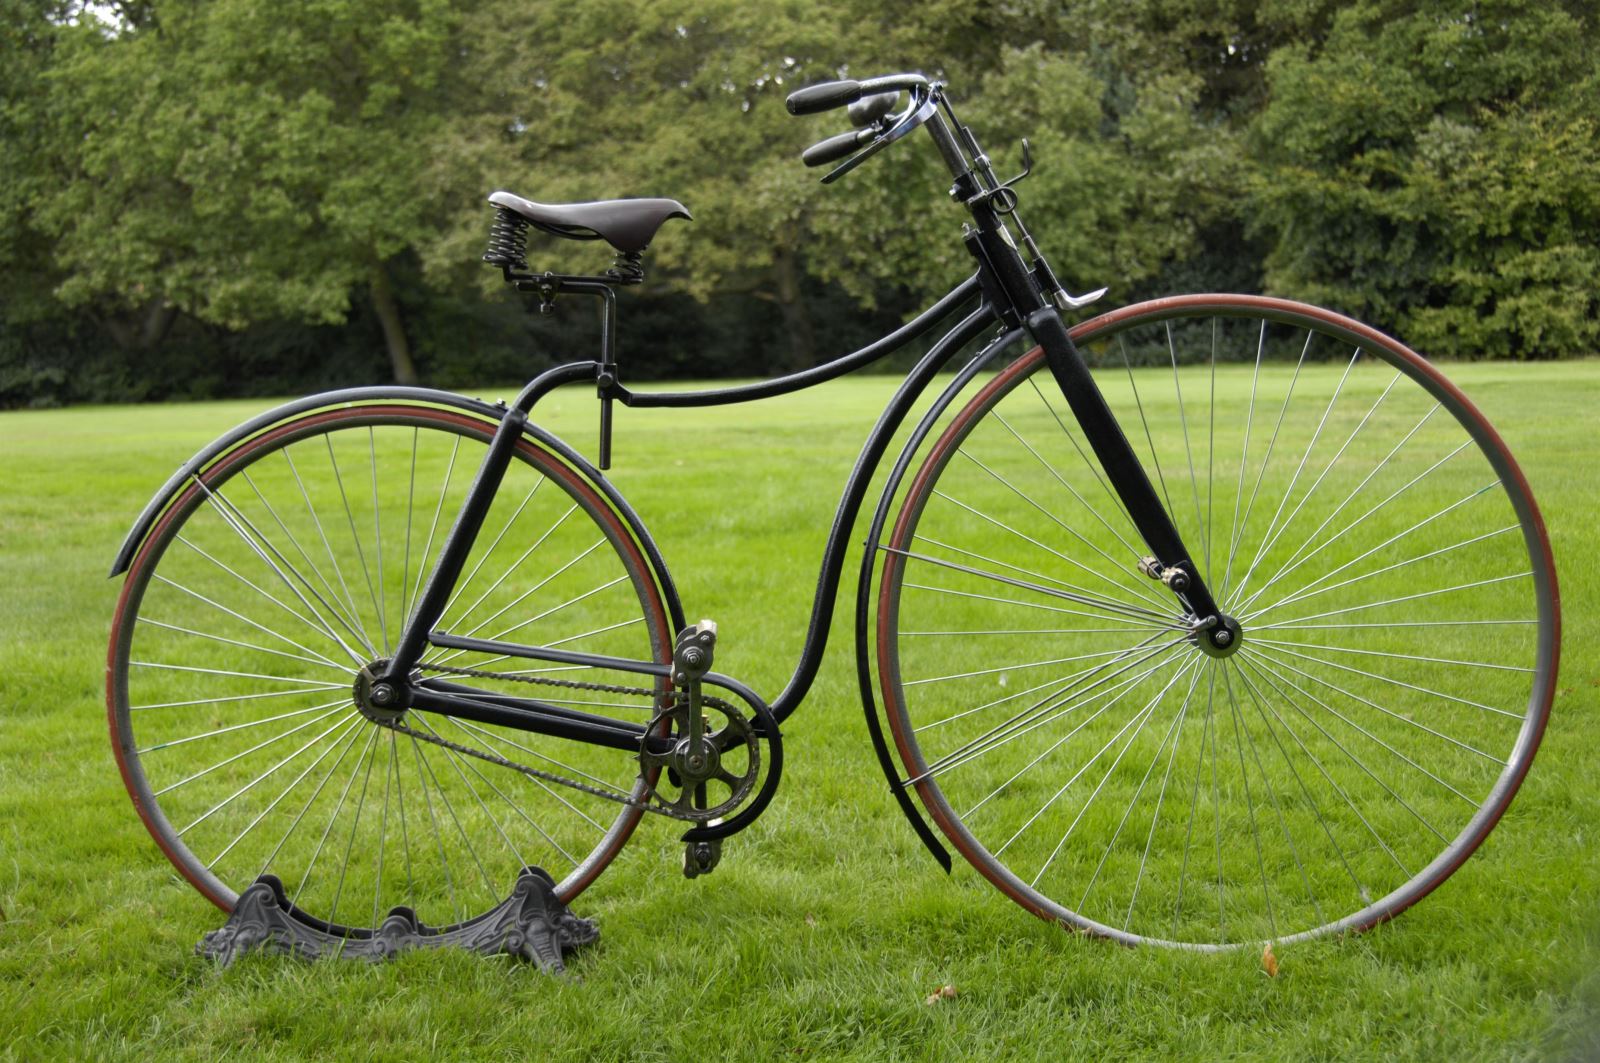 Mẫu xe đạp mang tên Rover do John Kemp Starley (cháu của James Starley) phát minh năm 1885.